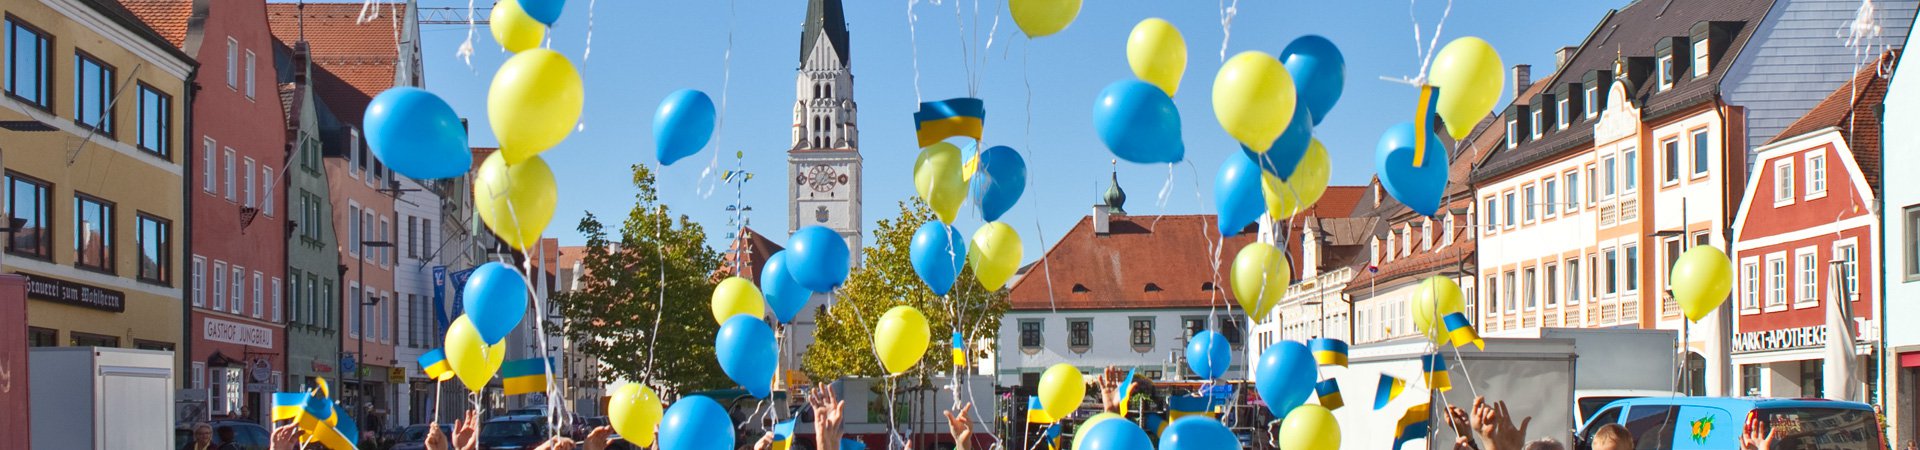 Pfaffenhofener Hauptplatz im sonnenschein mit bunen Häusern, Kirche im Hintergrund, gelbe und blaue Luftballons steigen auf